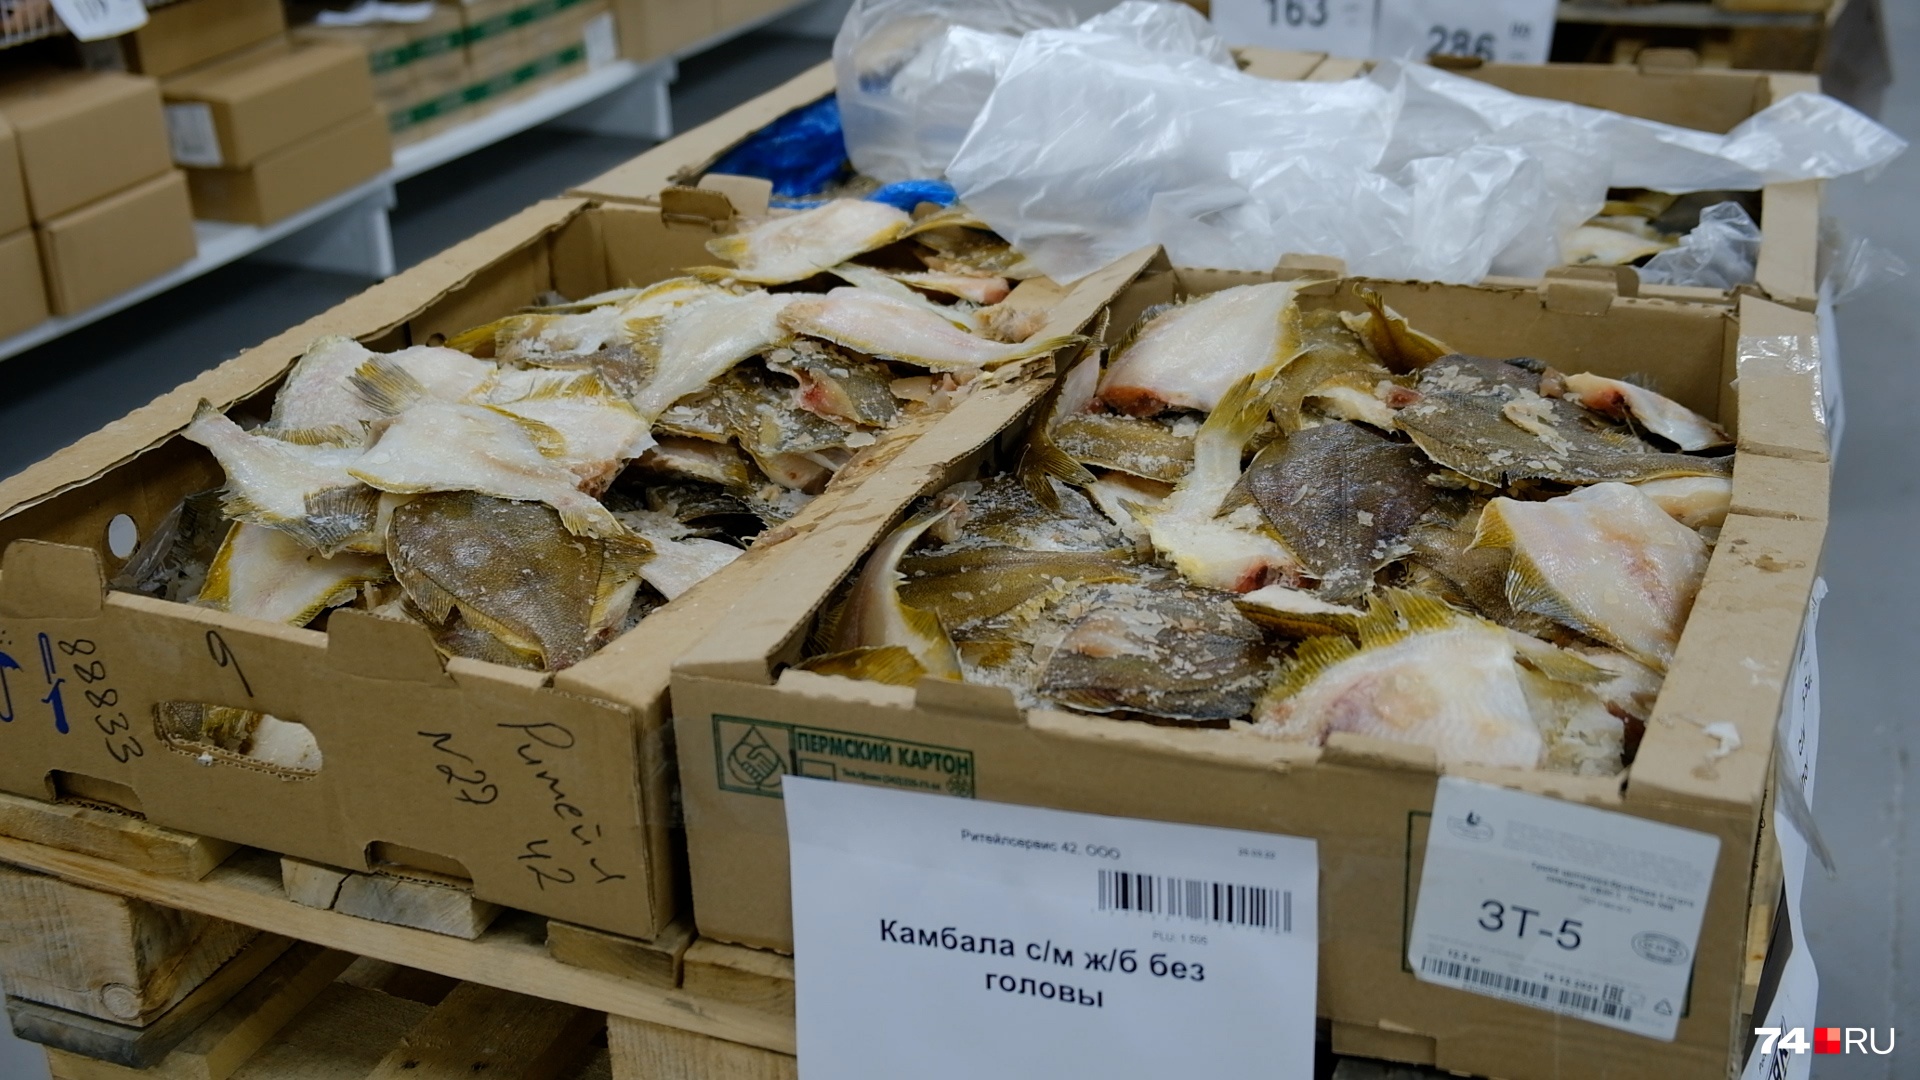 Зачастую выкладка товара выглядит небрежно: рыбу и мясо продают прямо из коробок